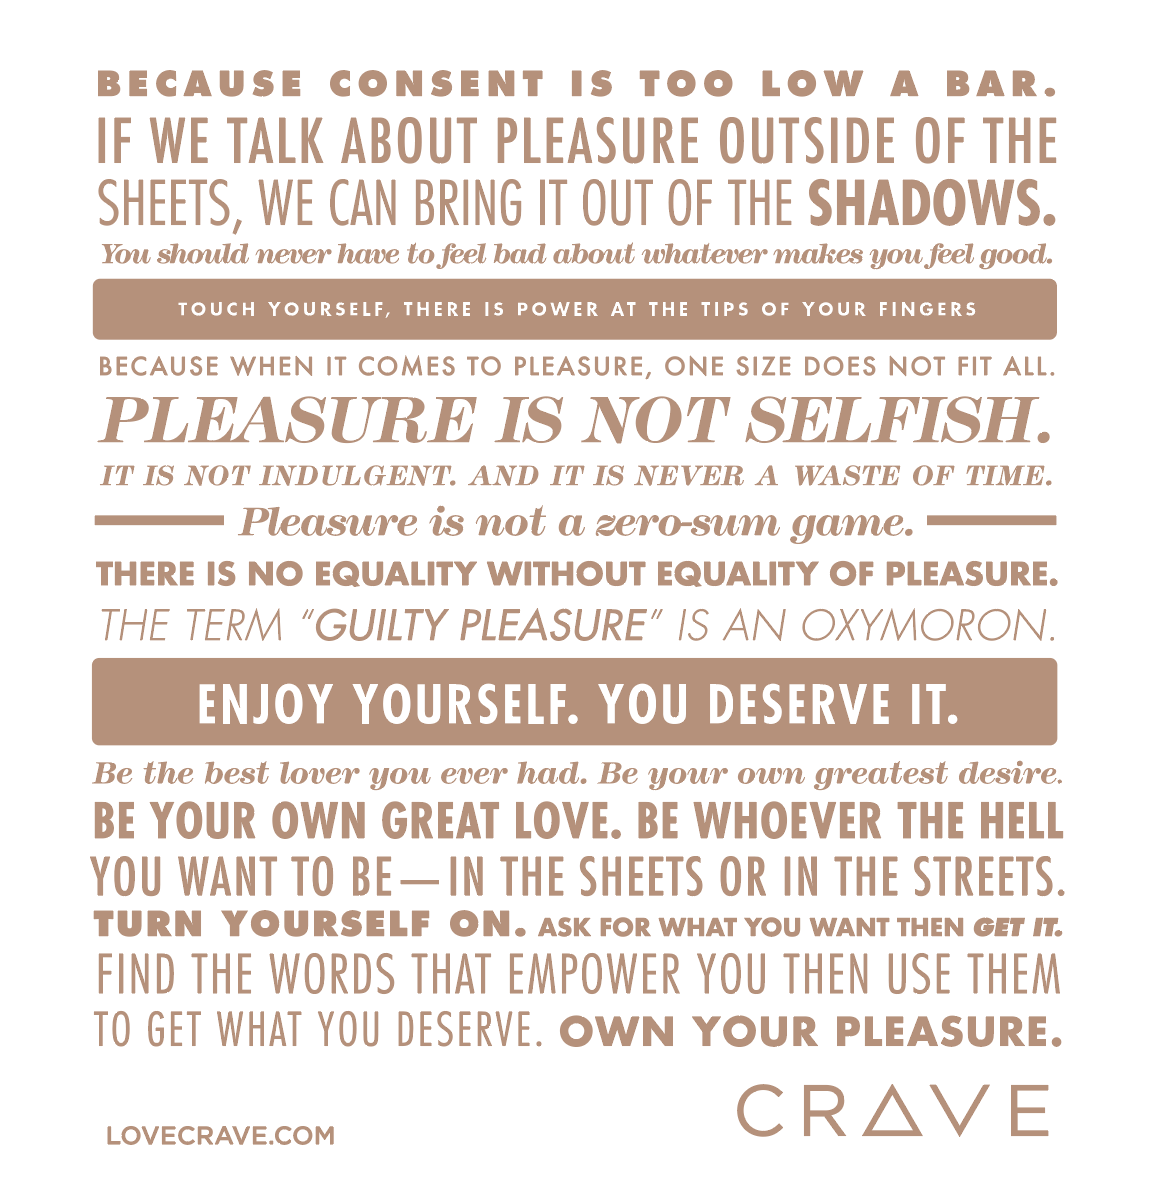 Crave Pleasure Manifesto